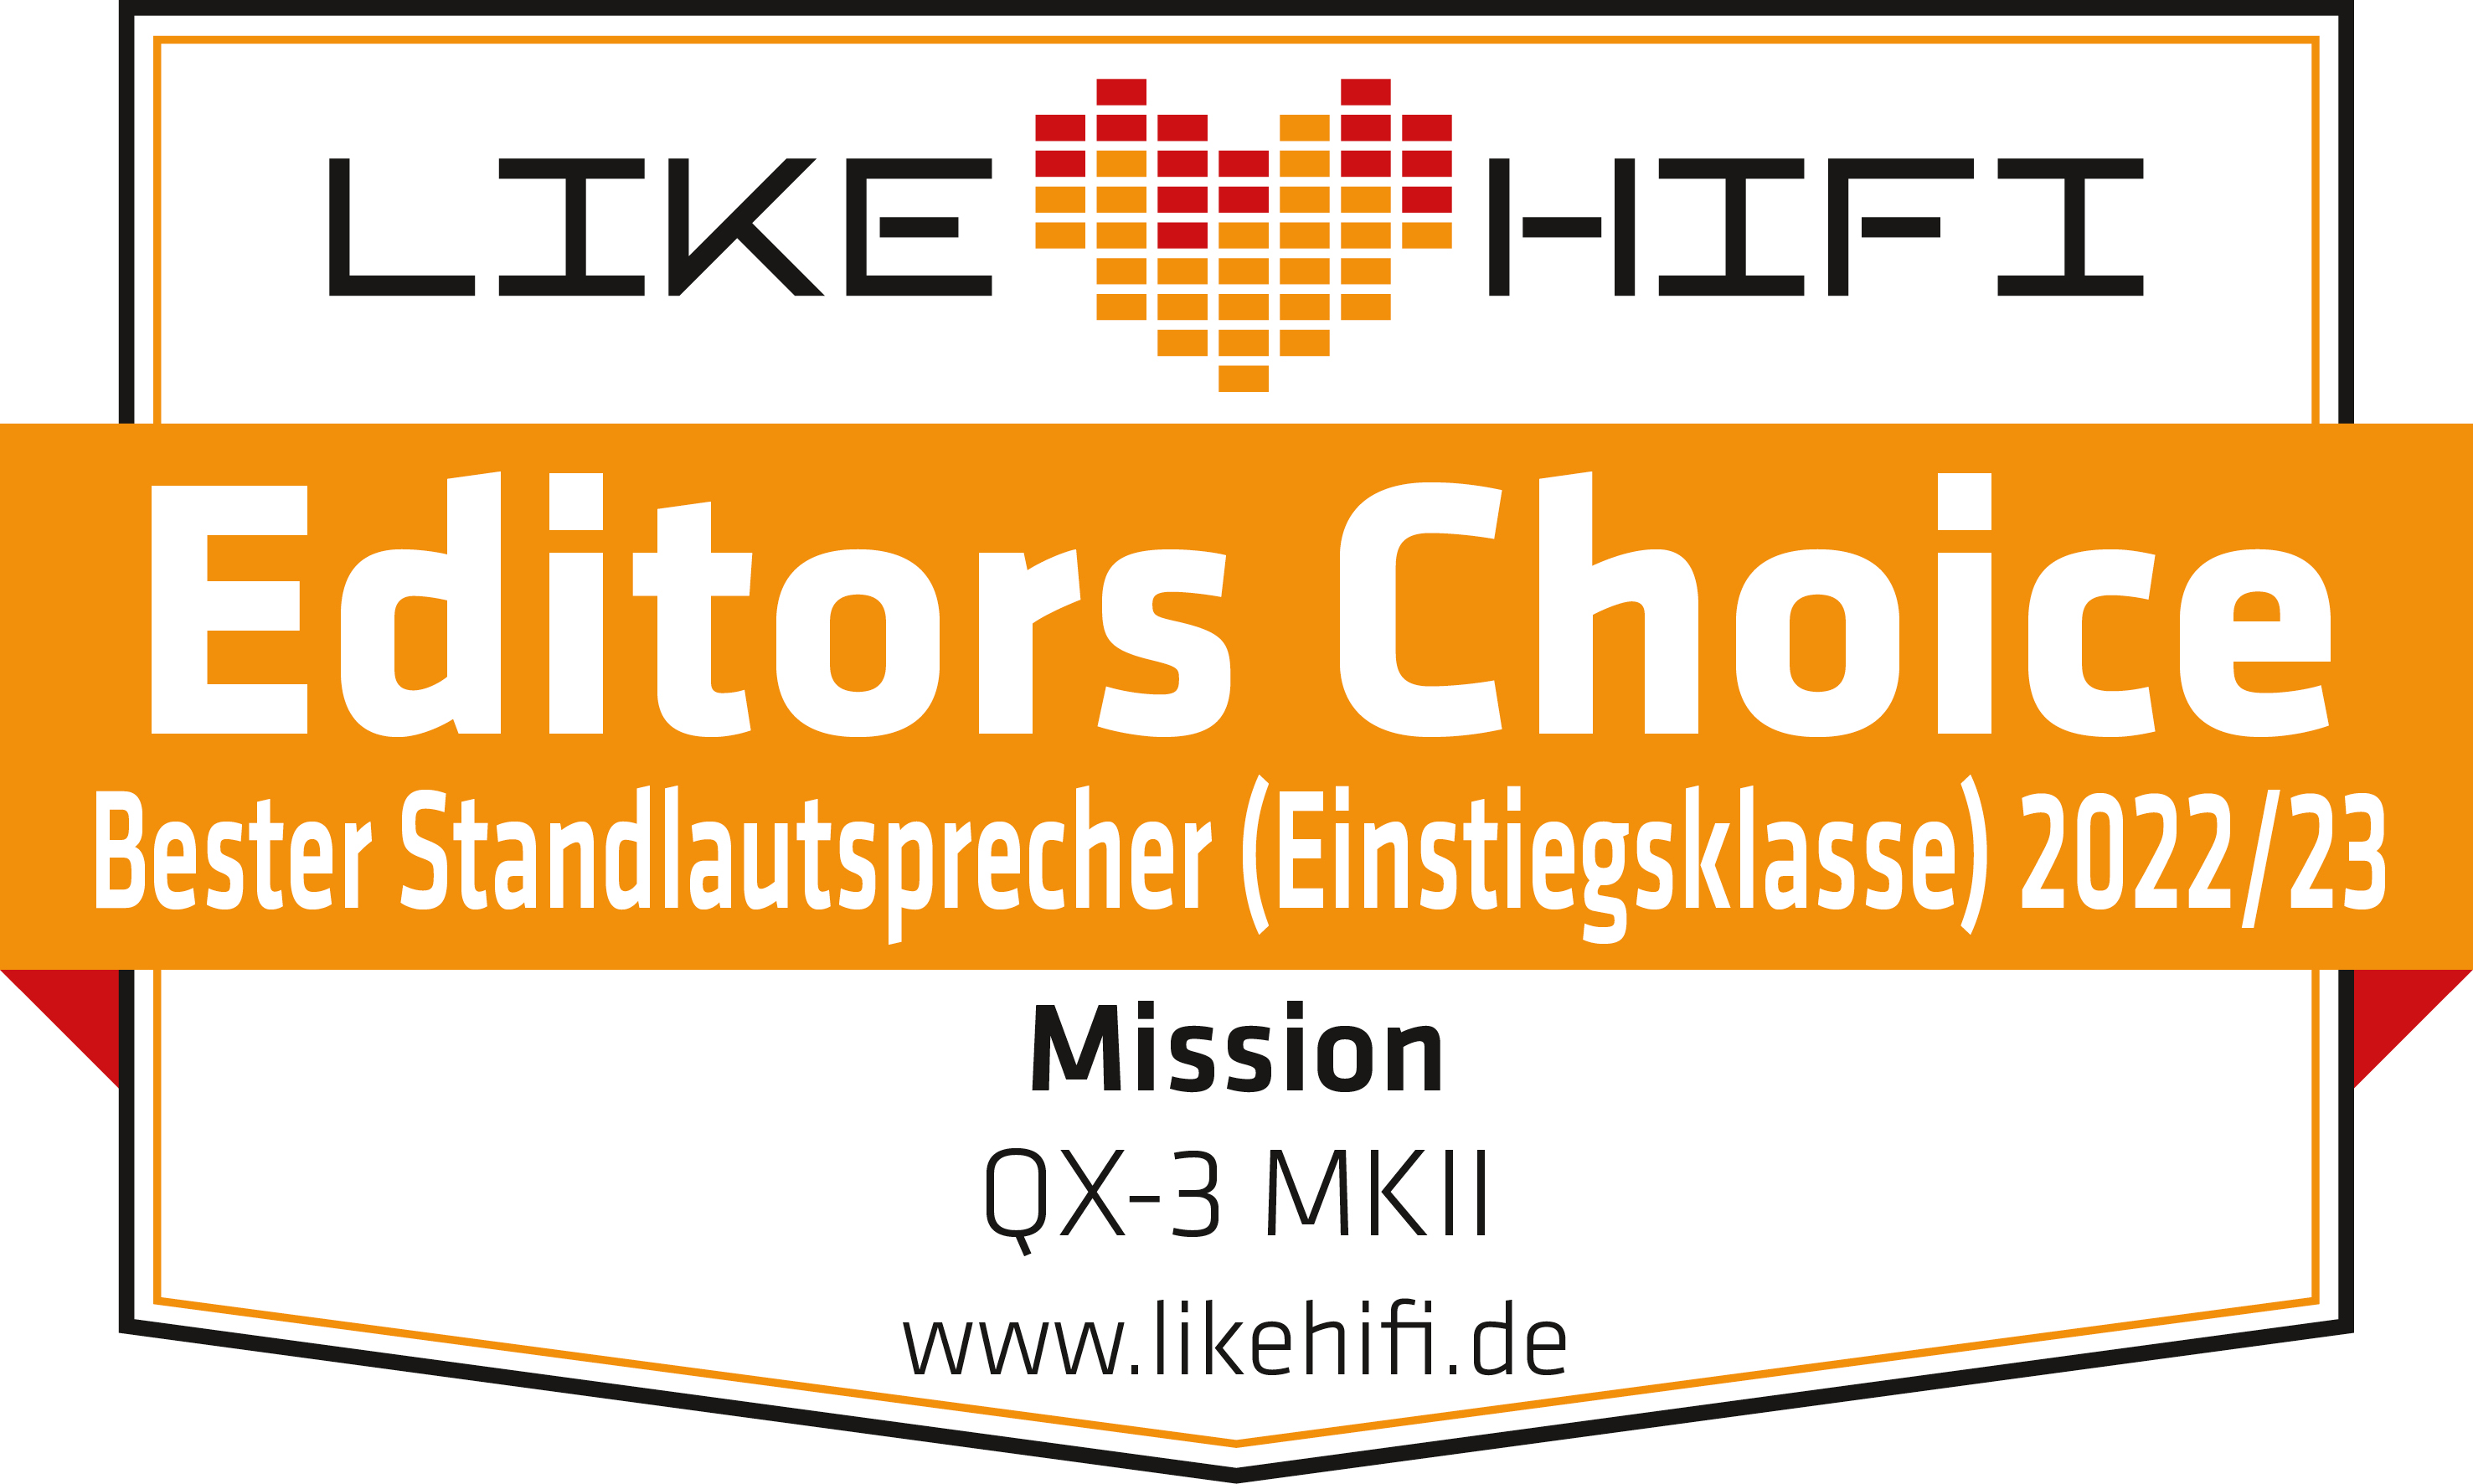 likehifi.de